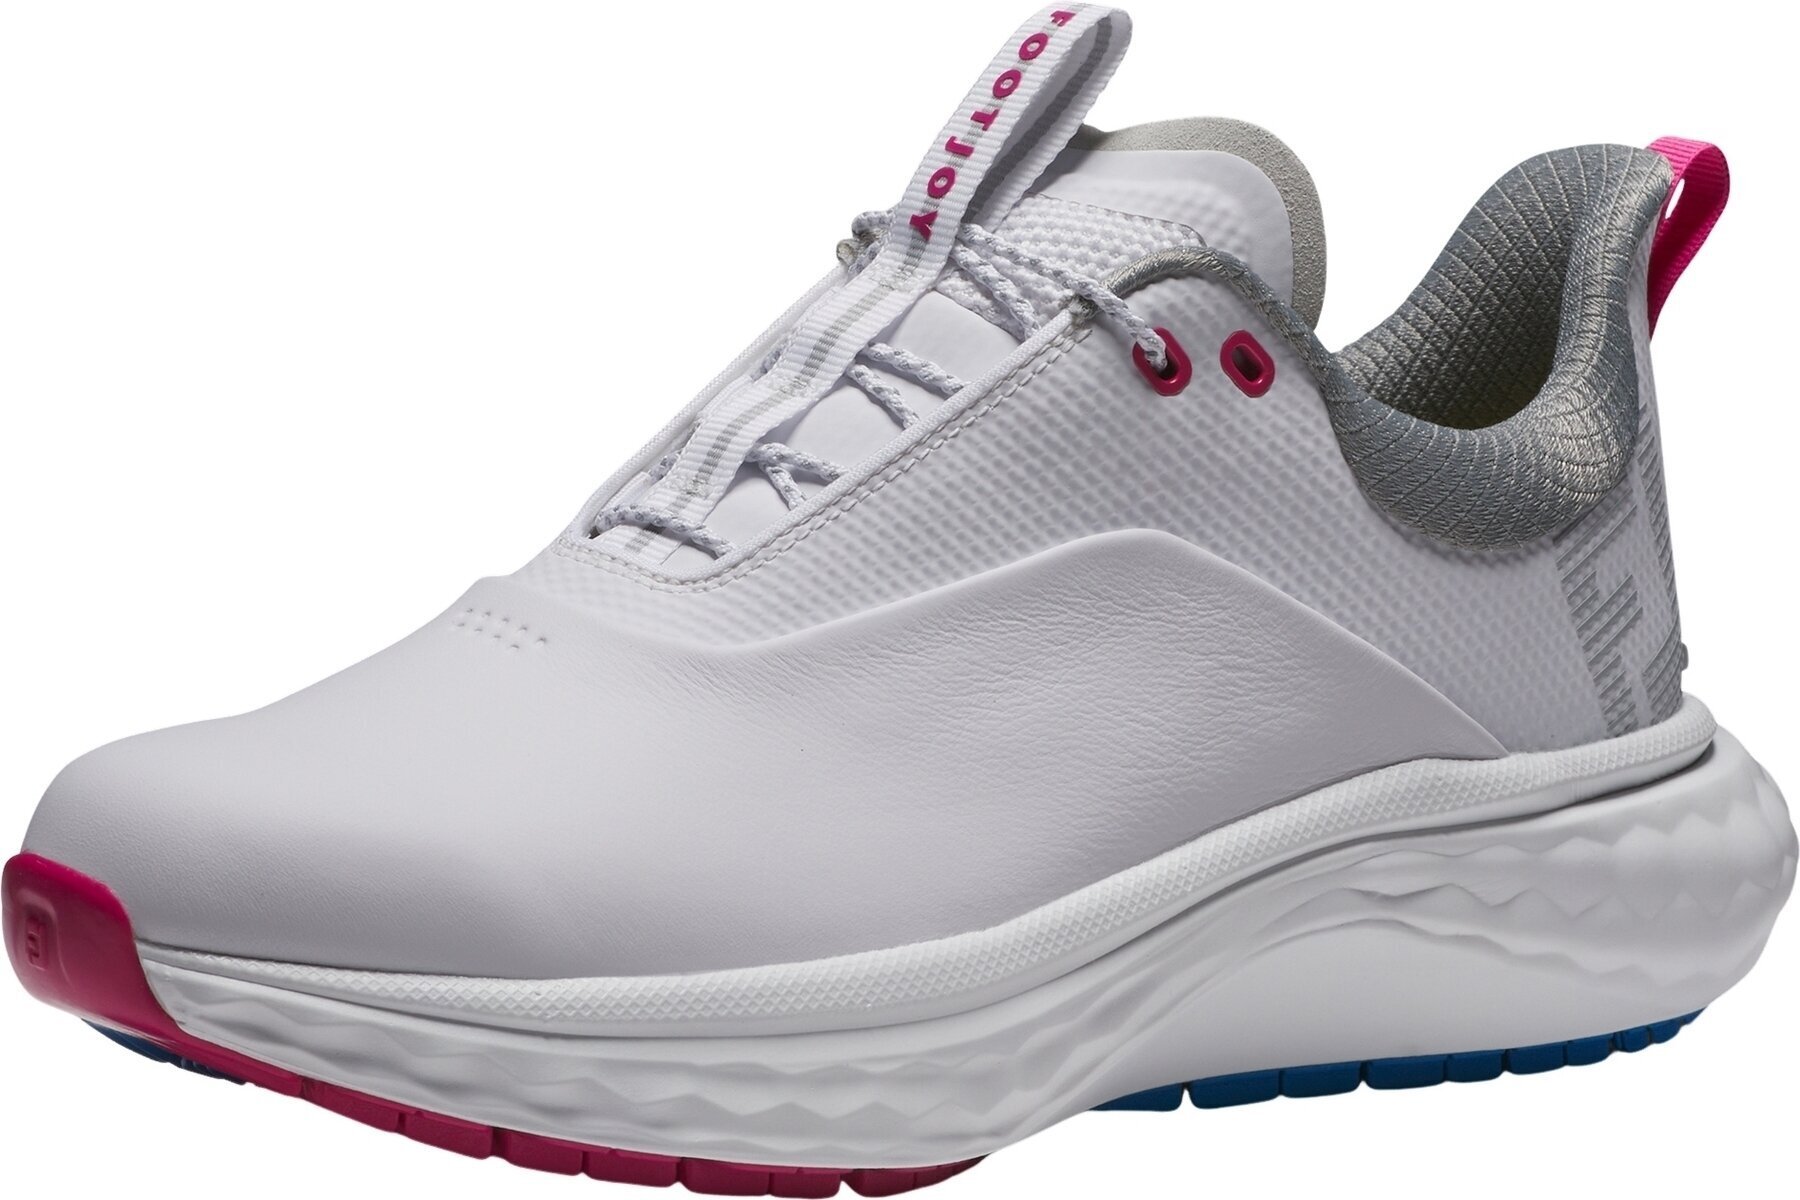 Γυναικείο Παπούτσι για Γκολφ Footjoy Quantum Womens Golf Shoes White/Blue/Pink 40,5